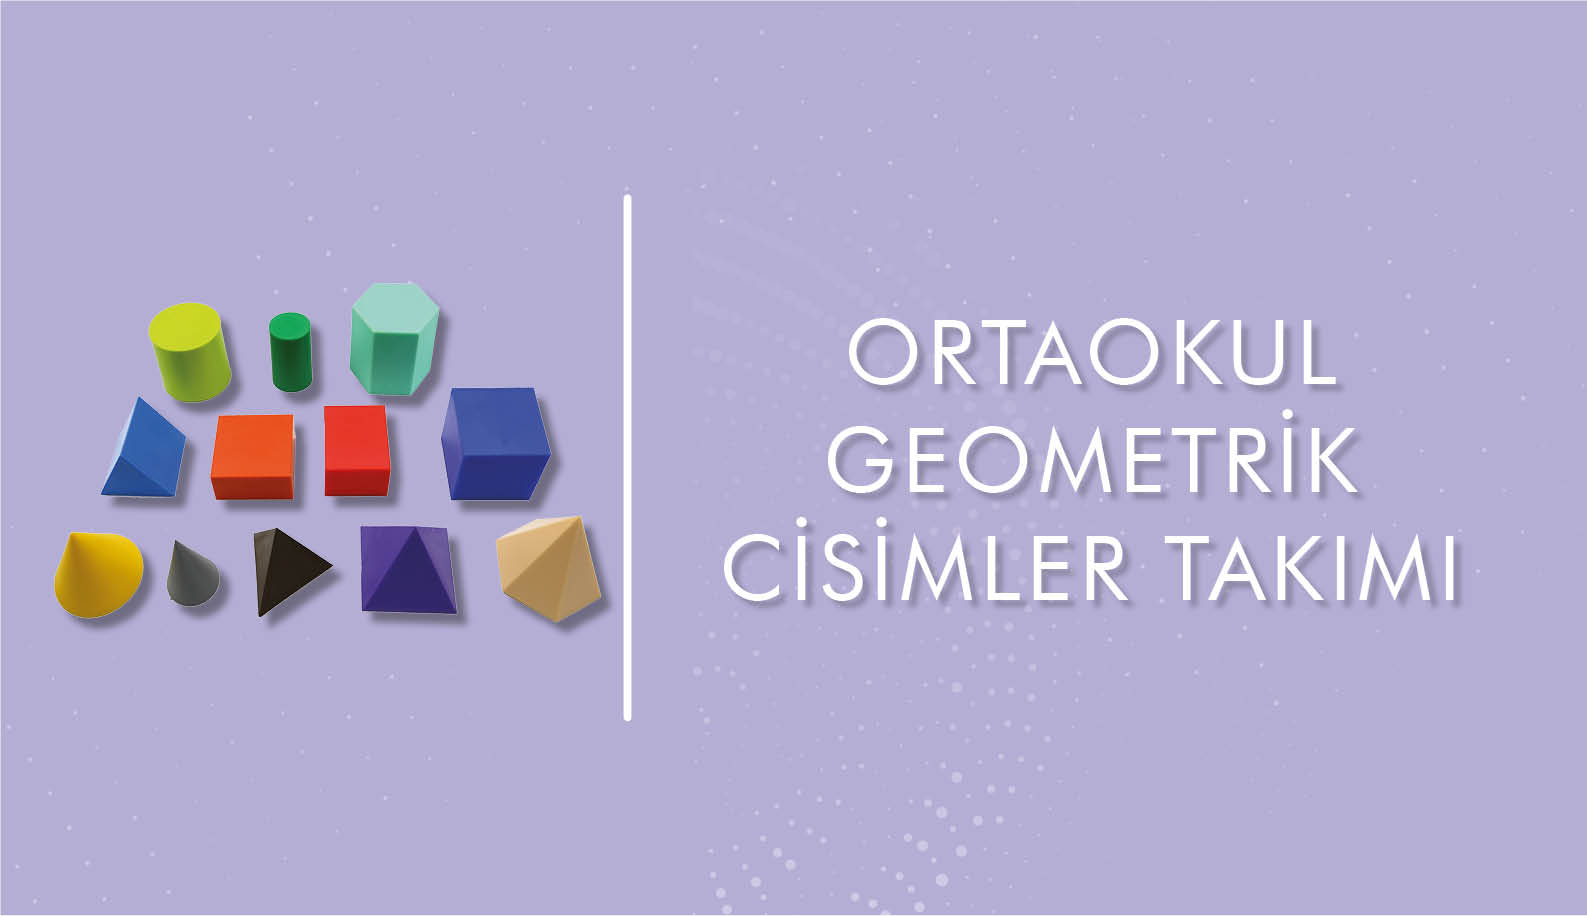 Geometrik Cisimler Takımı (Ortaokul)